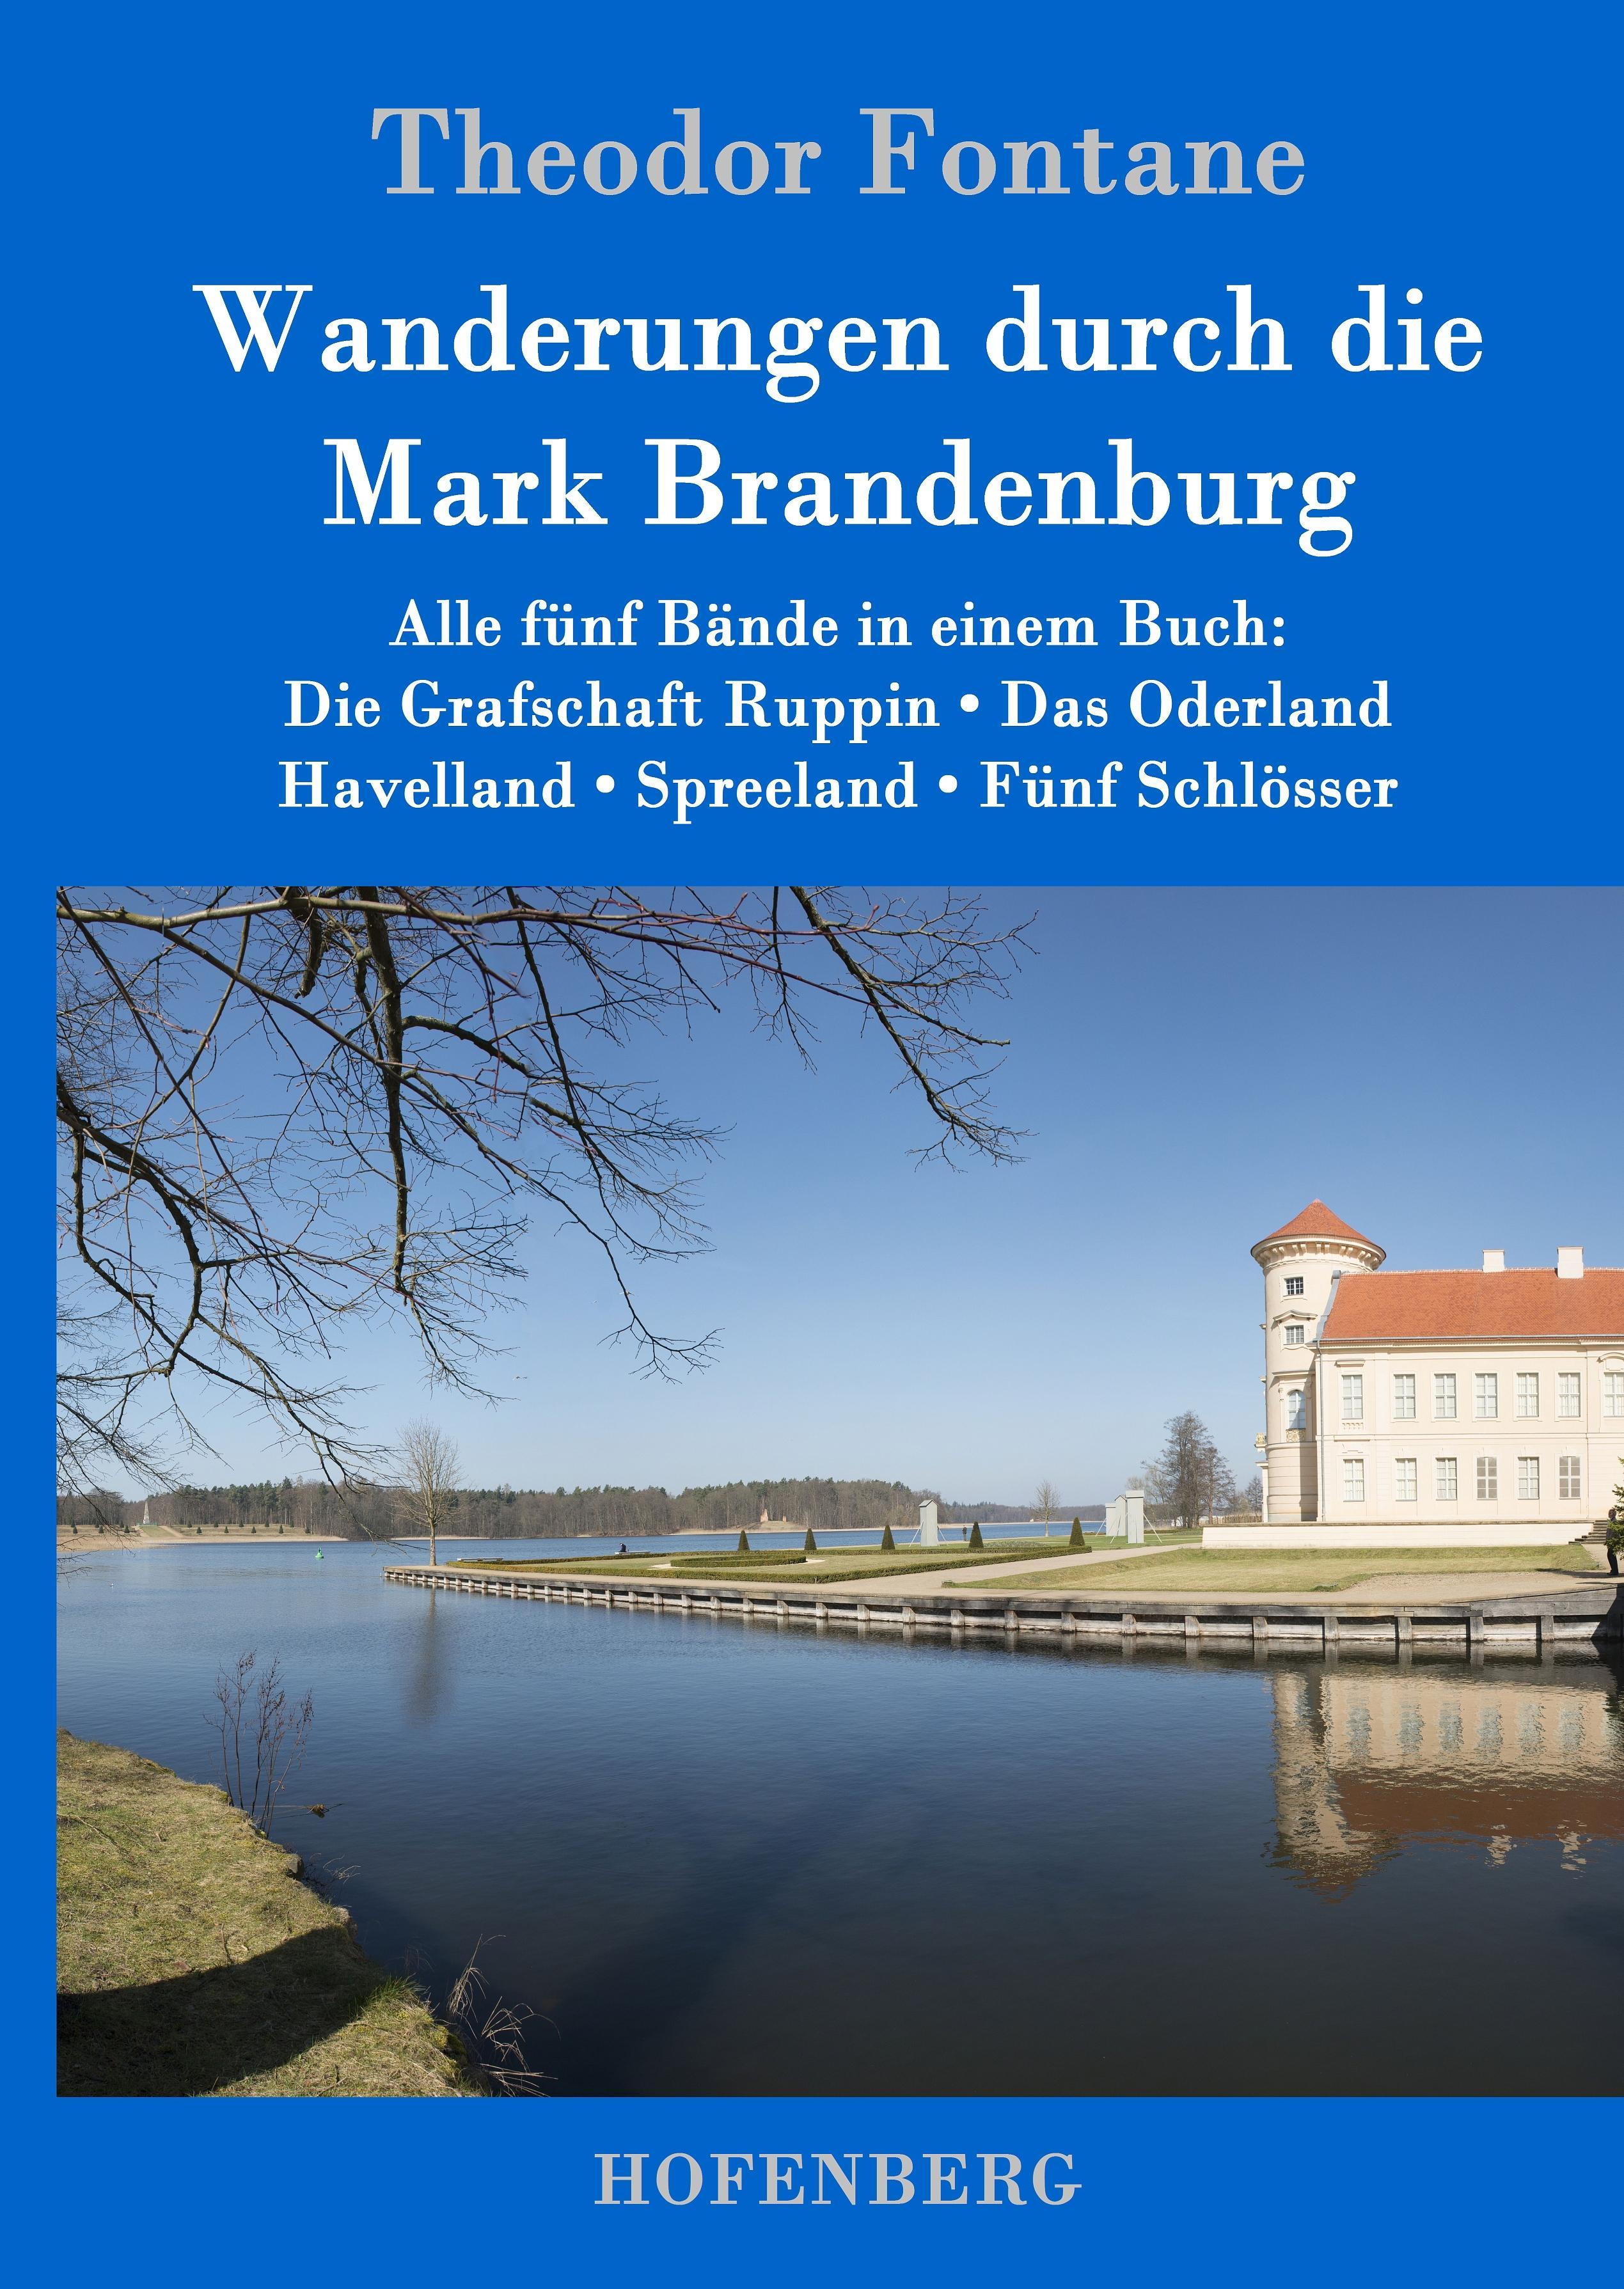 Wanderungen durch die Mark Brandenburg Alle fünf Bände in einem Buch: Die Grafschaft Ruppin / Das Oderland / Havelland / Spreeland / Fünf Schlösser